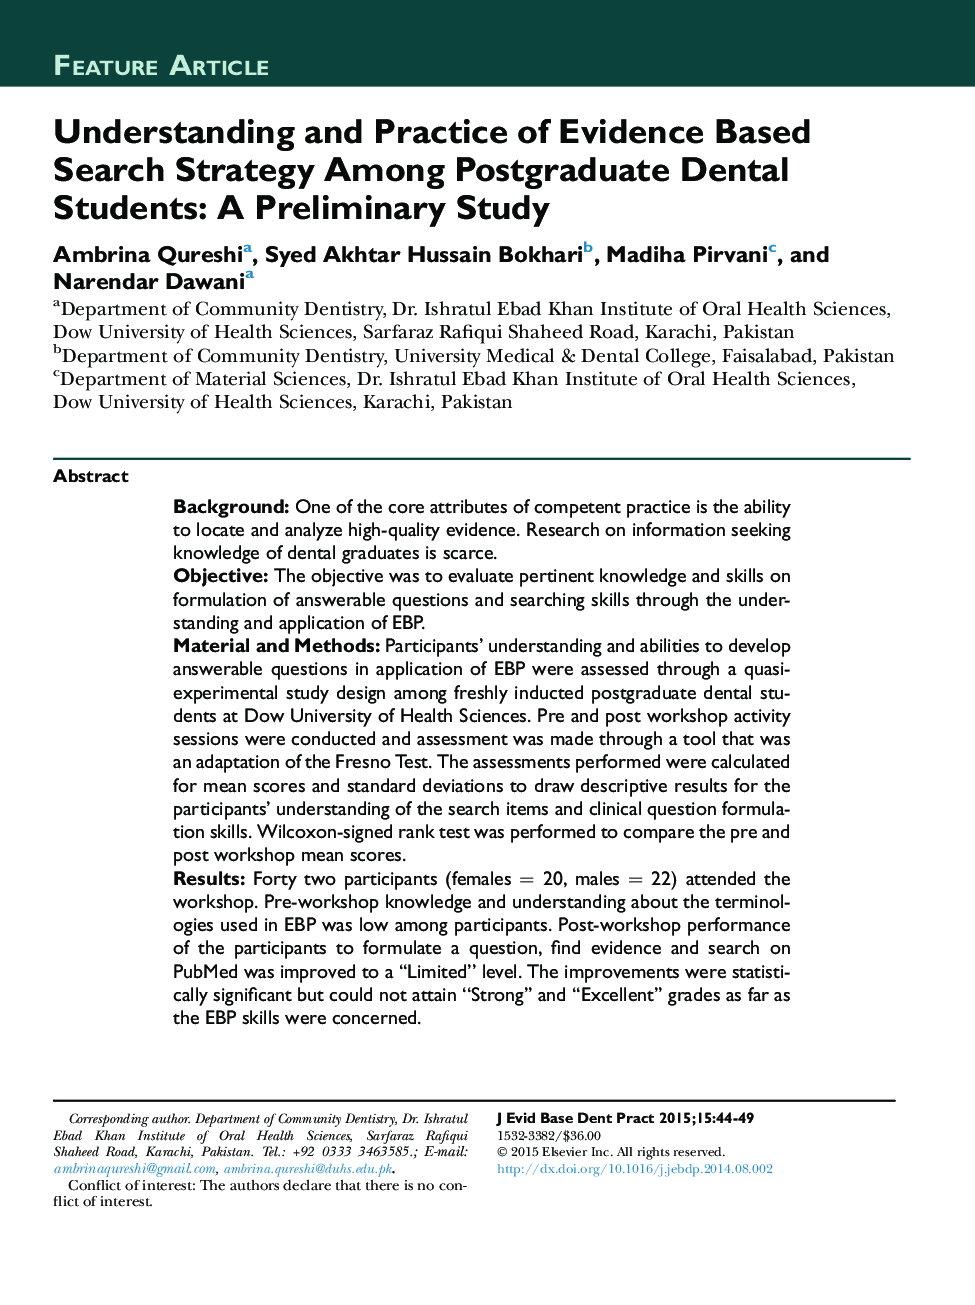 درک و عمل استراتژی جستجو مبتنی بر شواهد در میان دانش آموزان دندانپزشکی تحصیلات تکمیلی: یک مطالعه مقدماتی 